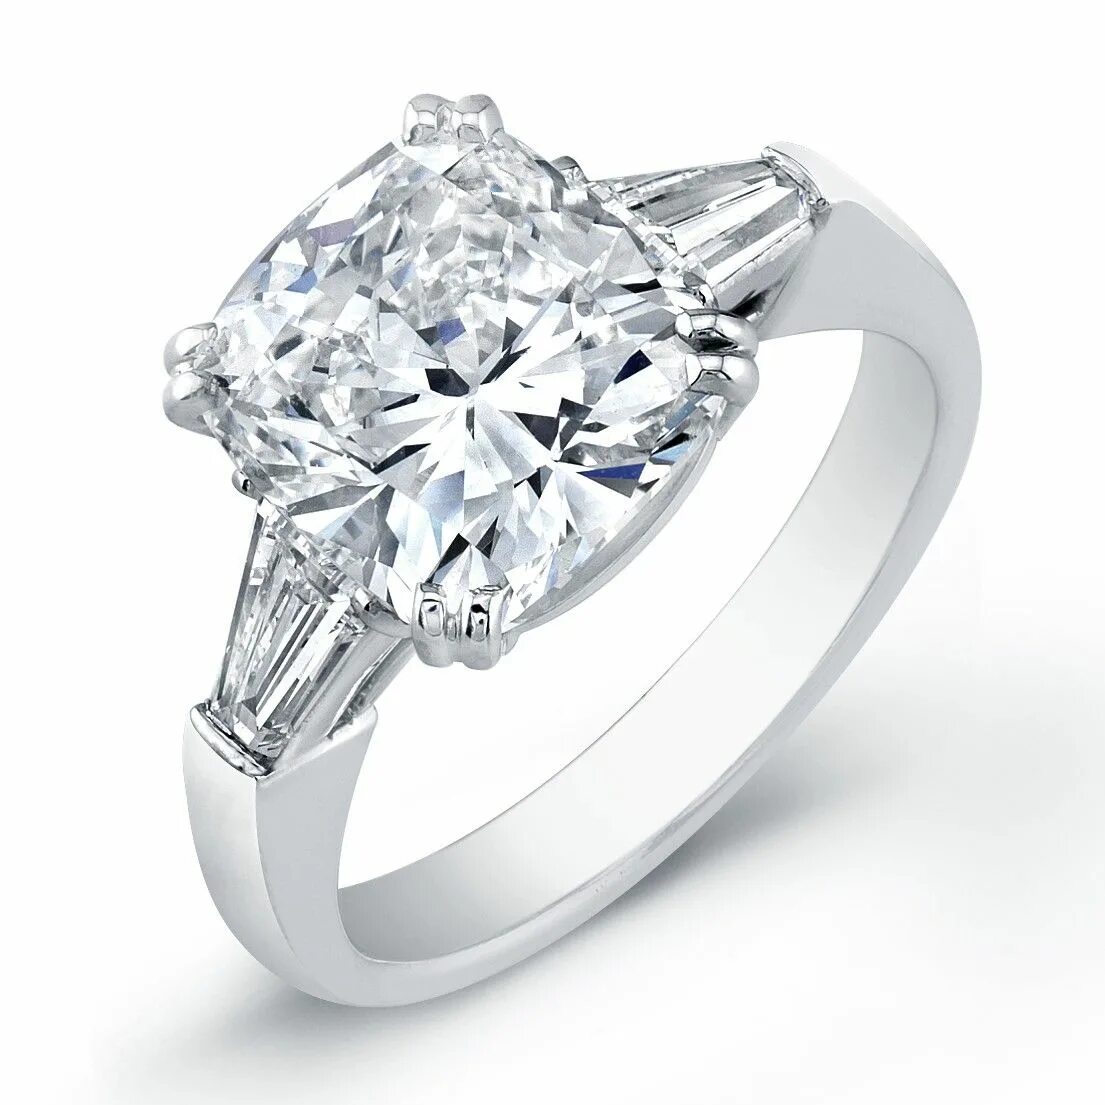 Кольцо с бриллиантом first class diamonds. Бриллиантовое кольцо. Помолвочные кольца с бриллиантом огранки кушон. Кольцо (украшение).